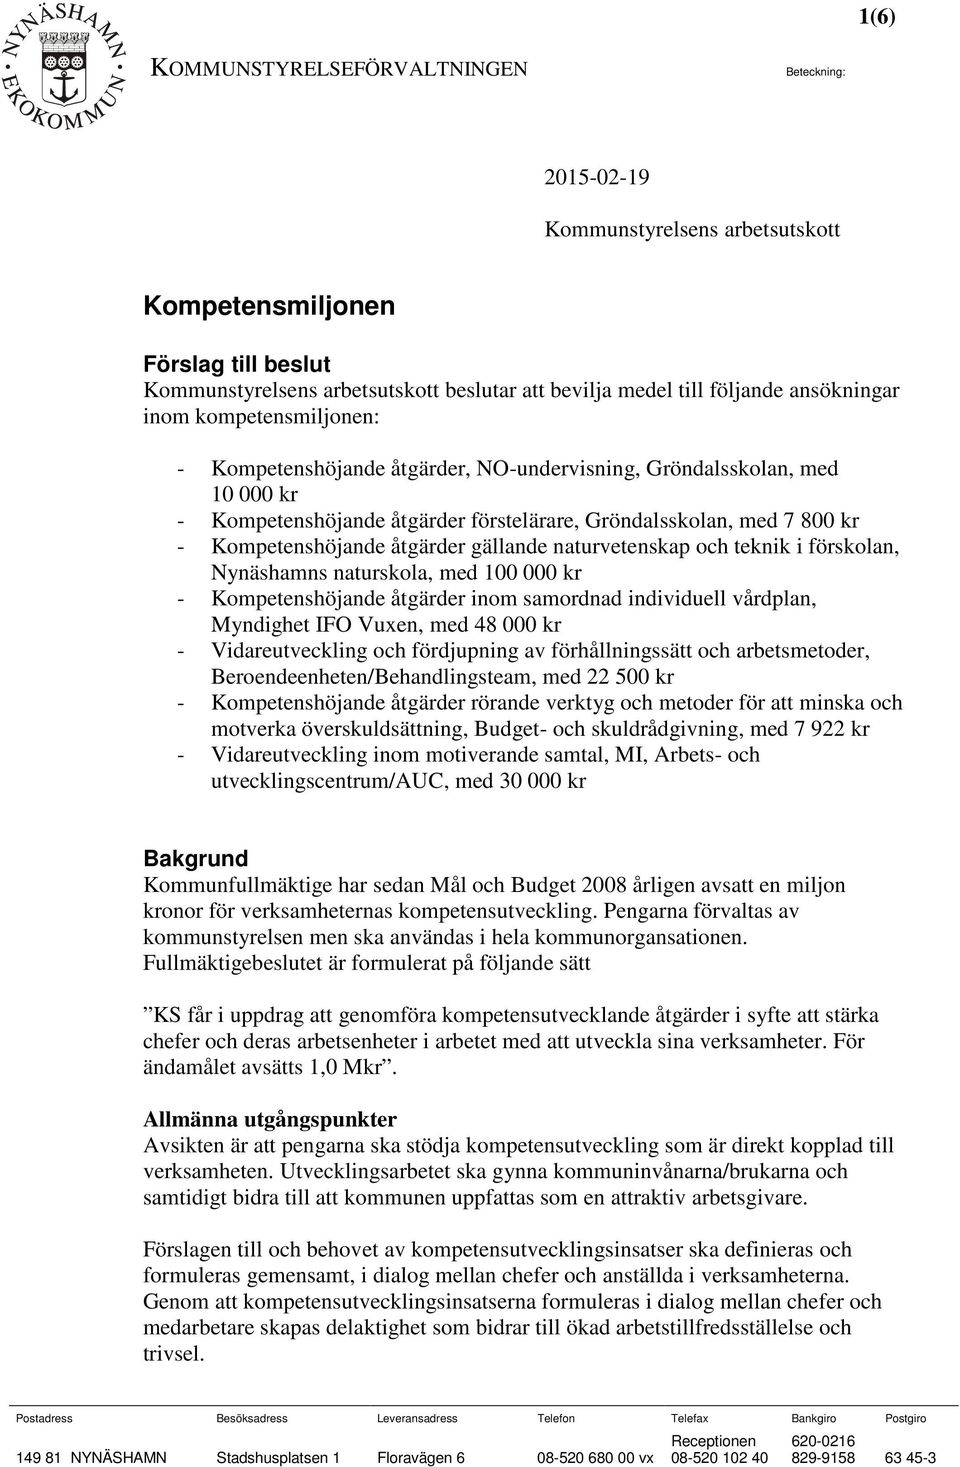 Kompetenshöjande åtgärder gällande naturvetenskap och teknik i förskolan, Nynäshamns naturskola, med 100 000 kr - Kompetenshöjande åtgärder inom samordnad individuell vårdplan, Myndighet IFO Vuxen,